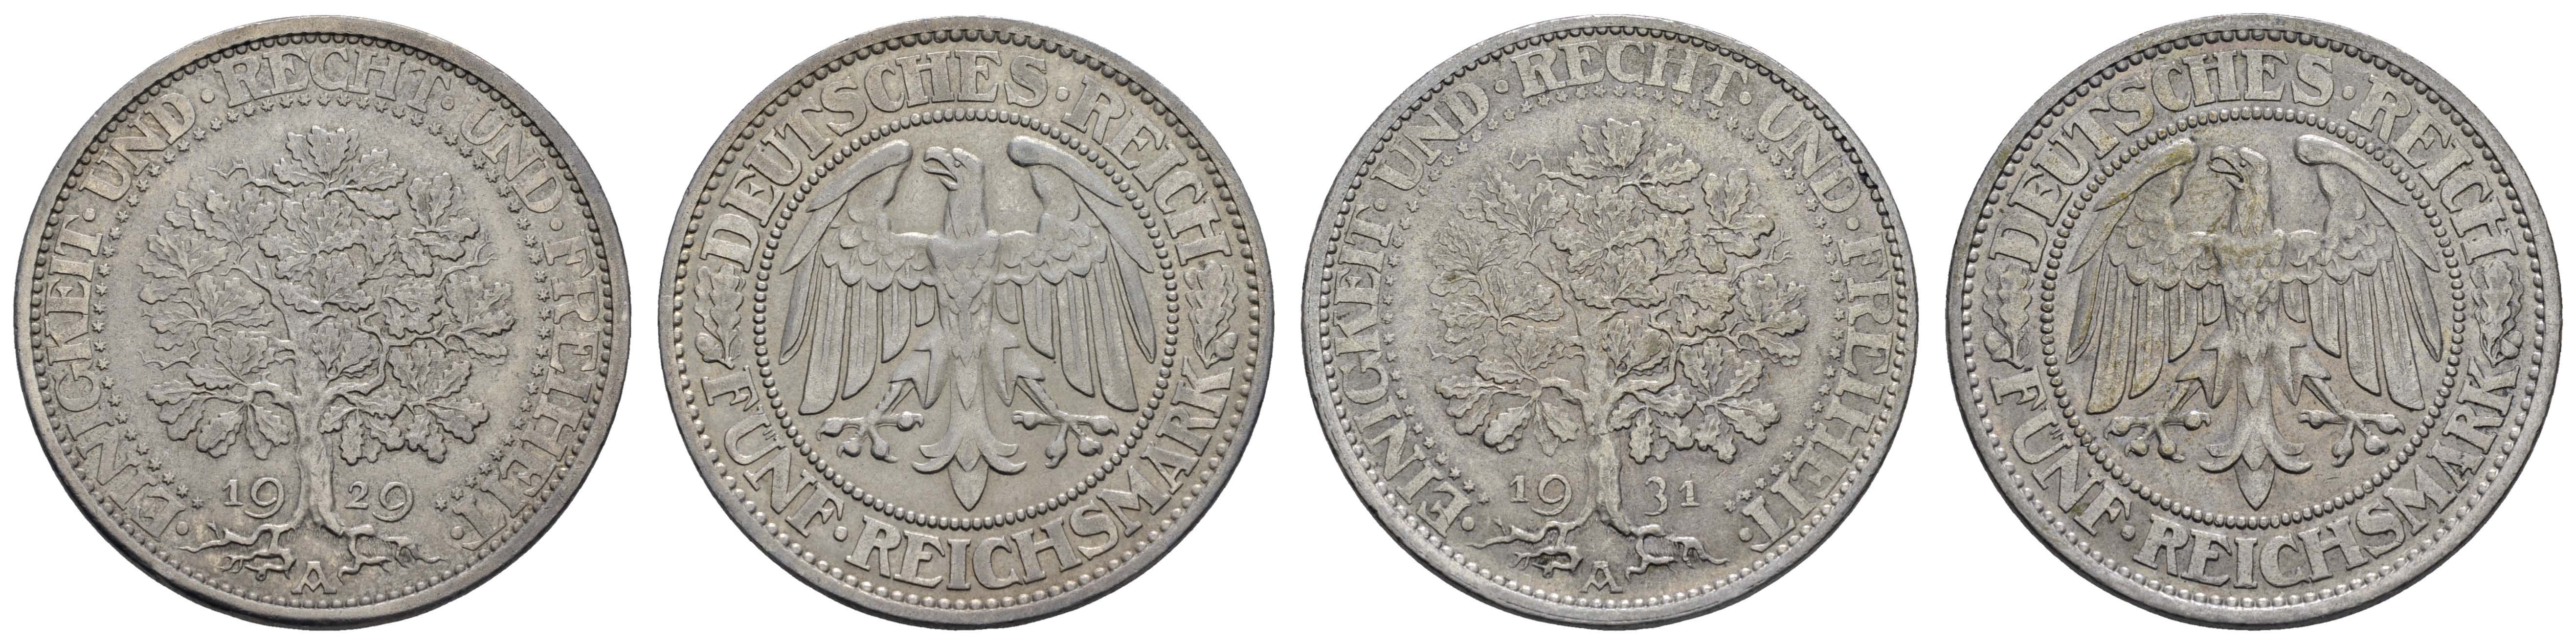 Lot 1050 - deutschland weimarer republik -  Auktionshaus Ulrich Felzmann GmbH & Co. KG Coins single lots